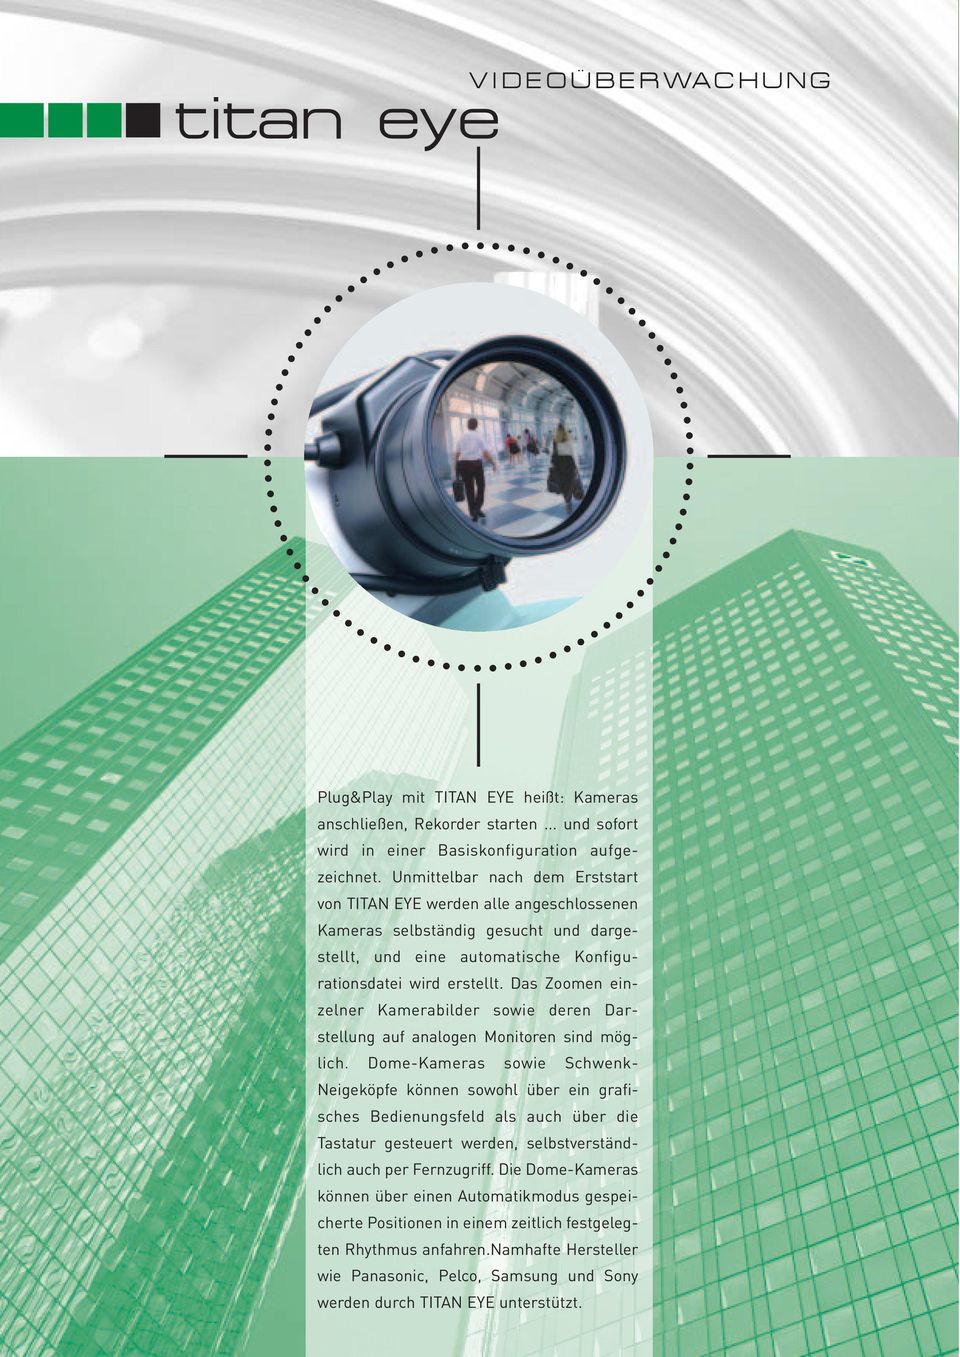 Das Zoomen einzelner Kamerabilder sowie deren Darstellung auf analogen Monitoren sind möglich.